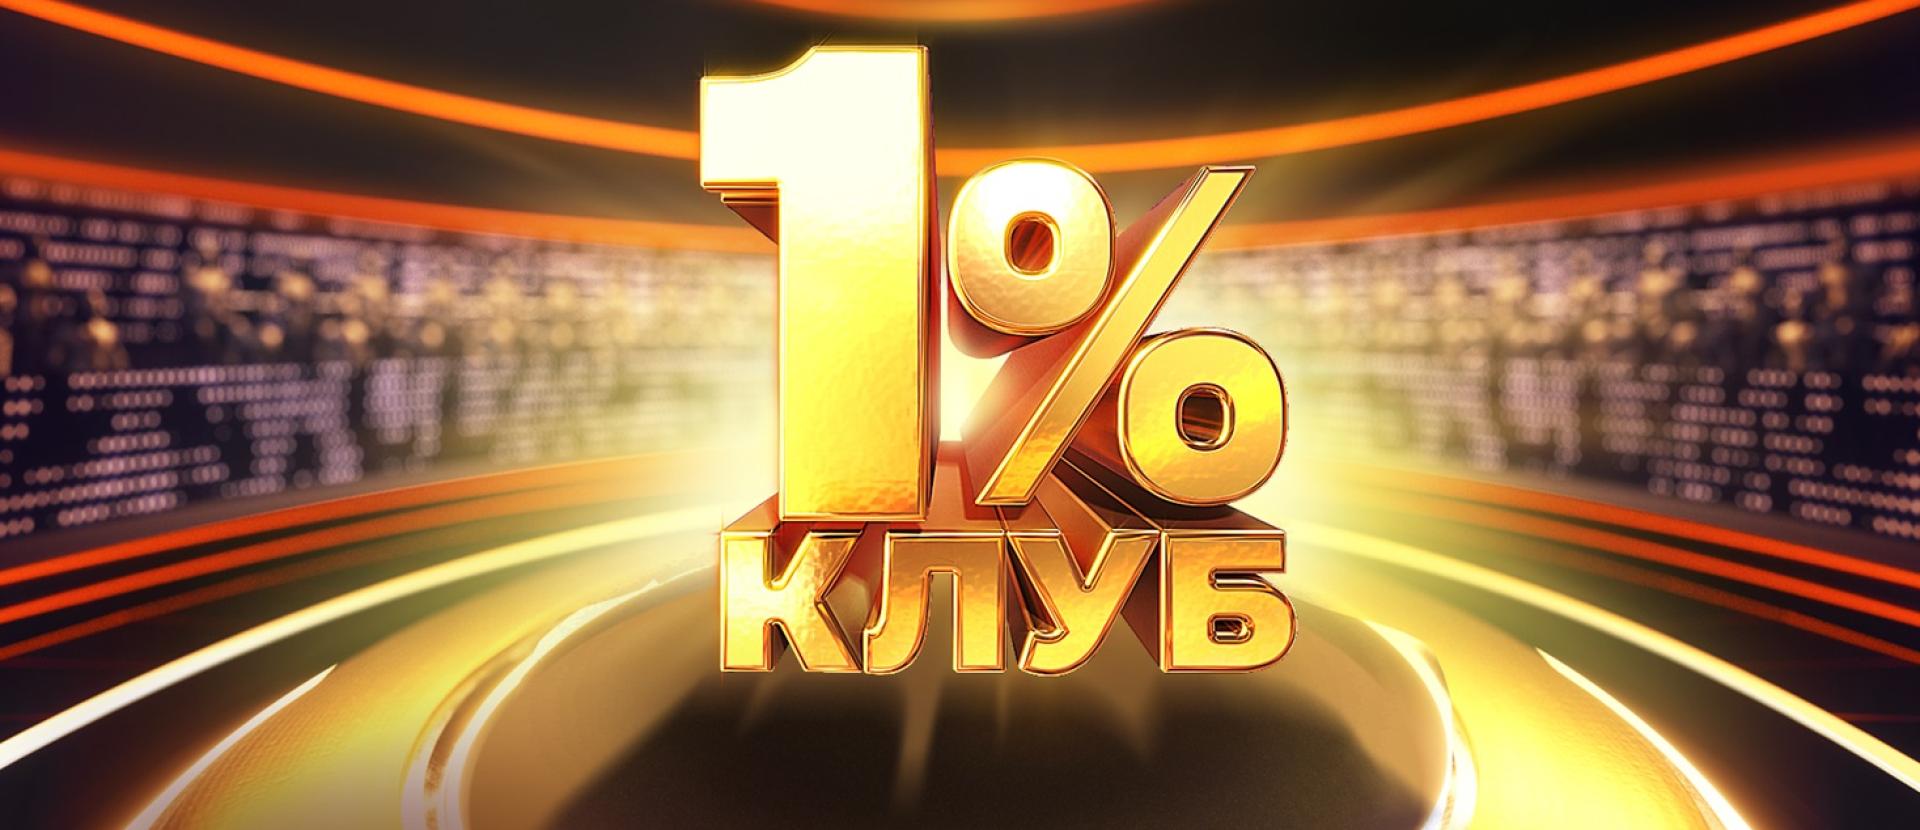 Клуб 1% - новий проєкт "1+1 Україна". Новини та подробиці проєкту Клуб 1%